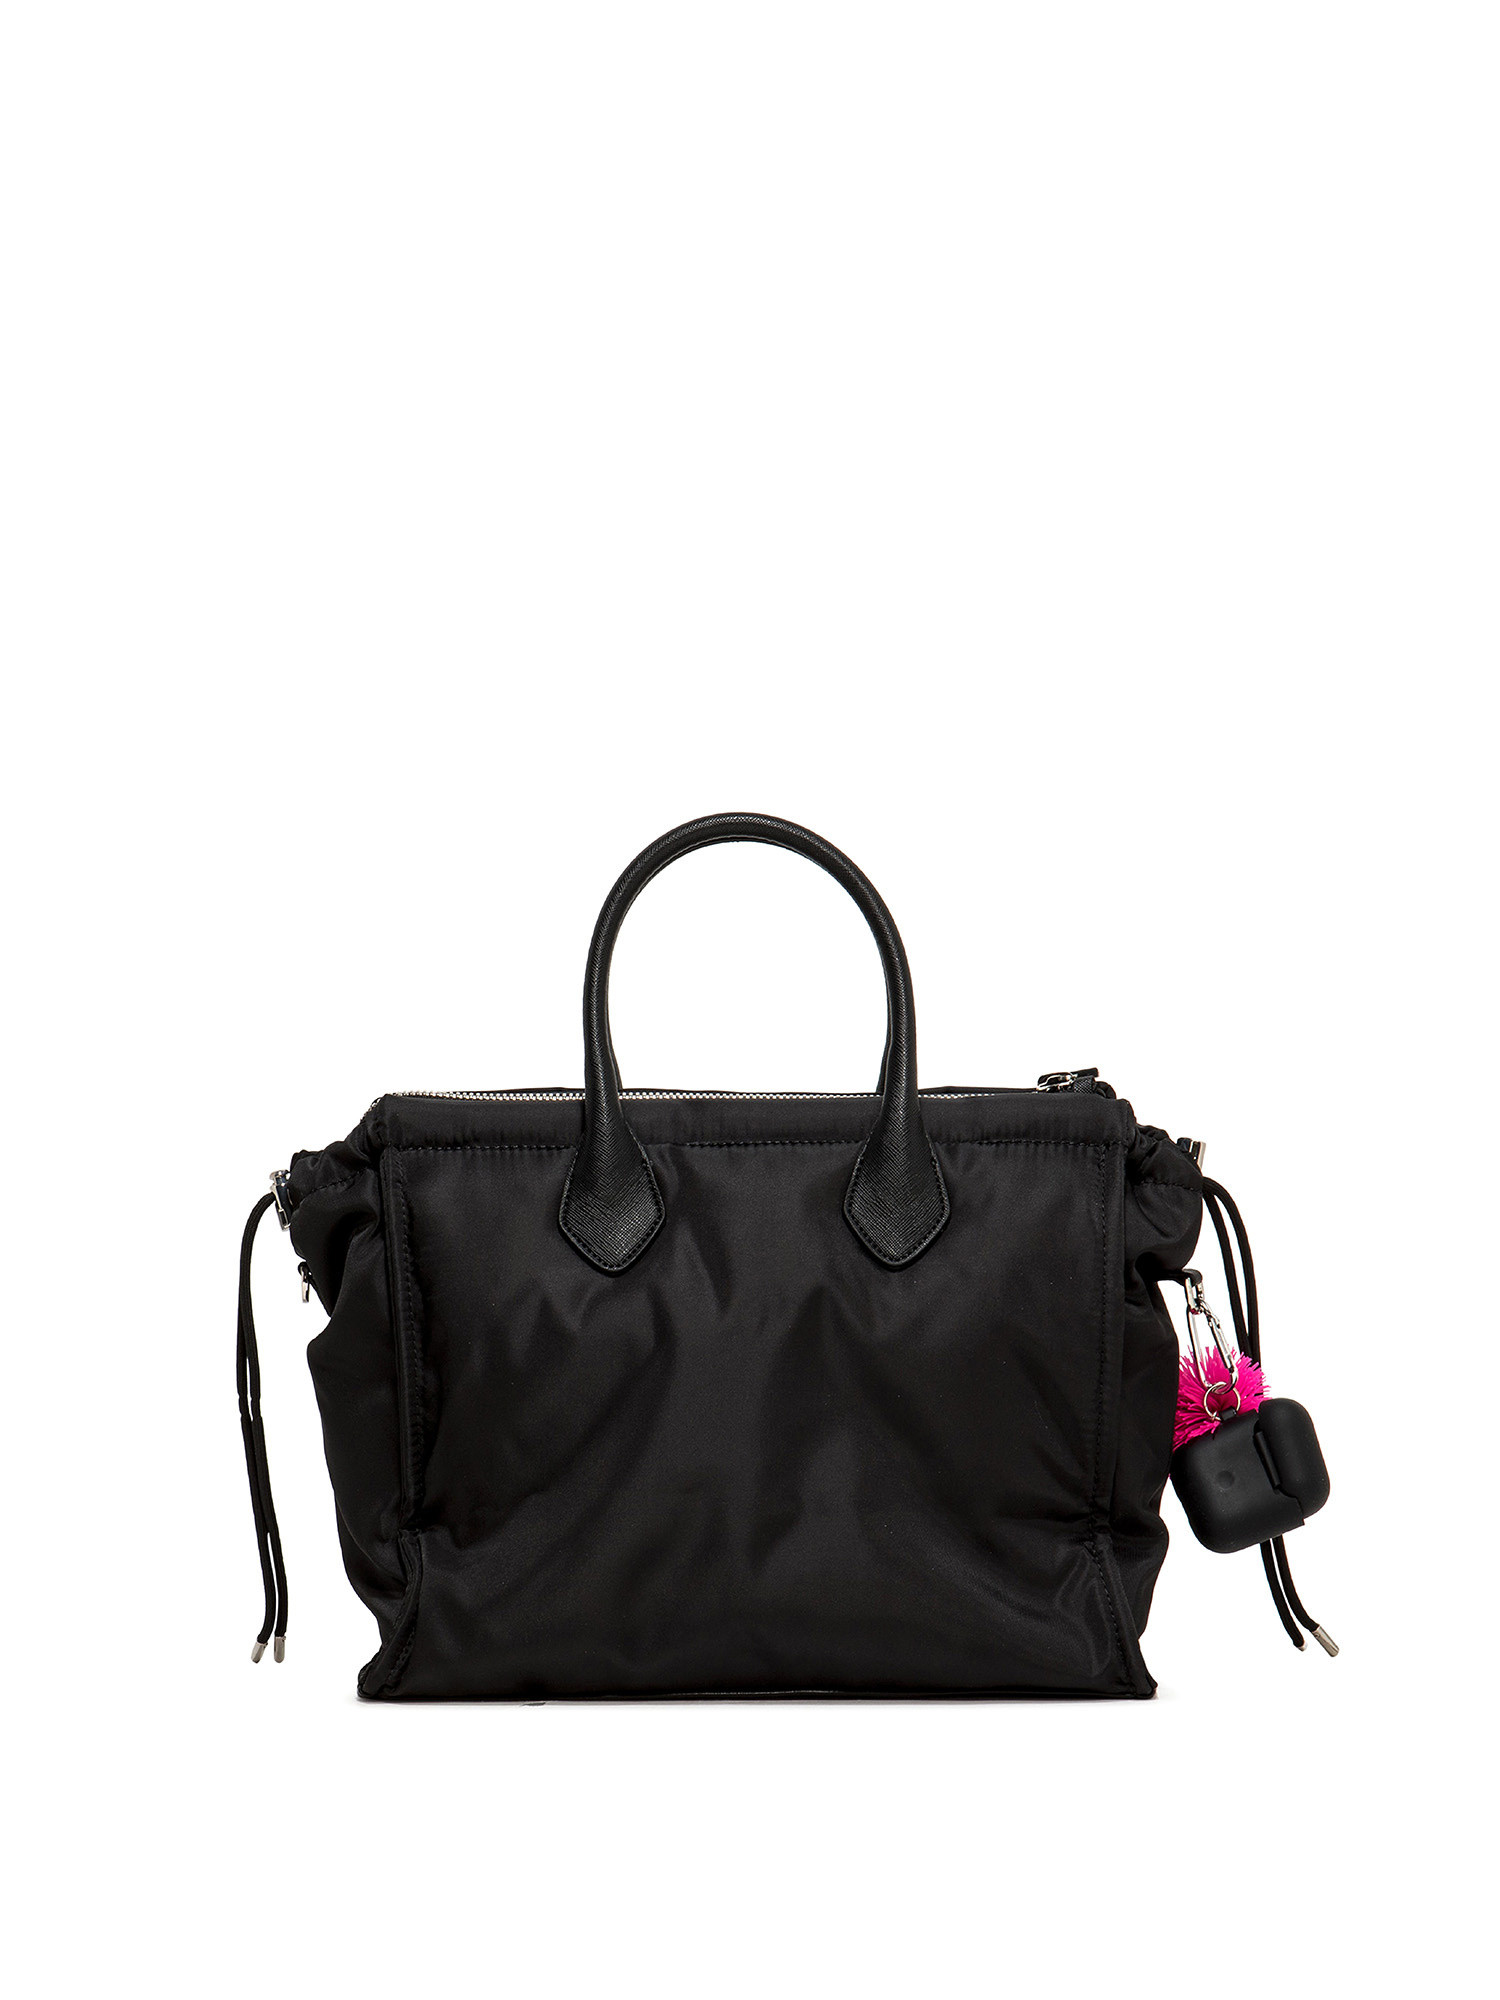 Large handbag Escape, Black, large image number 1